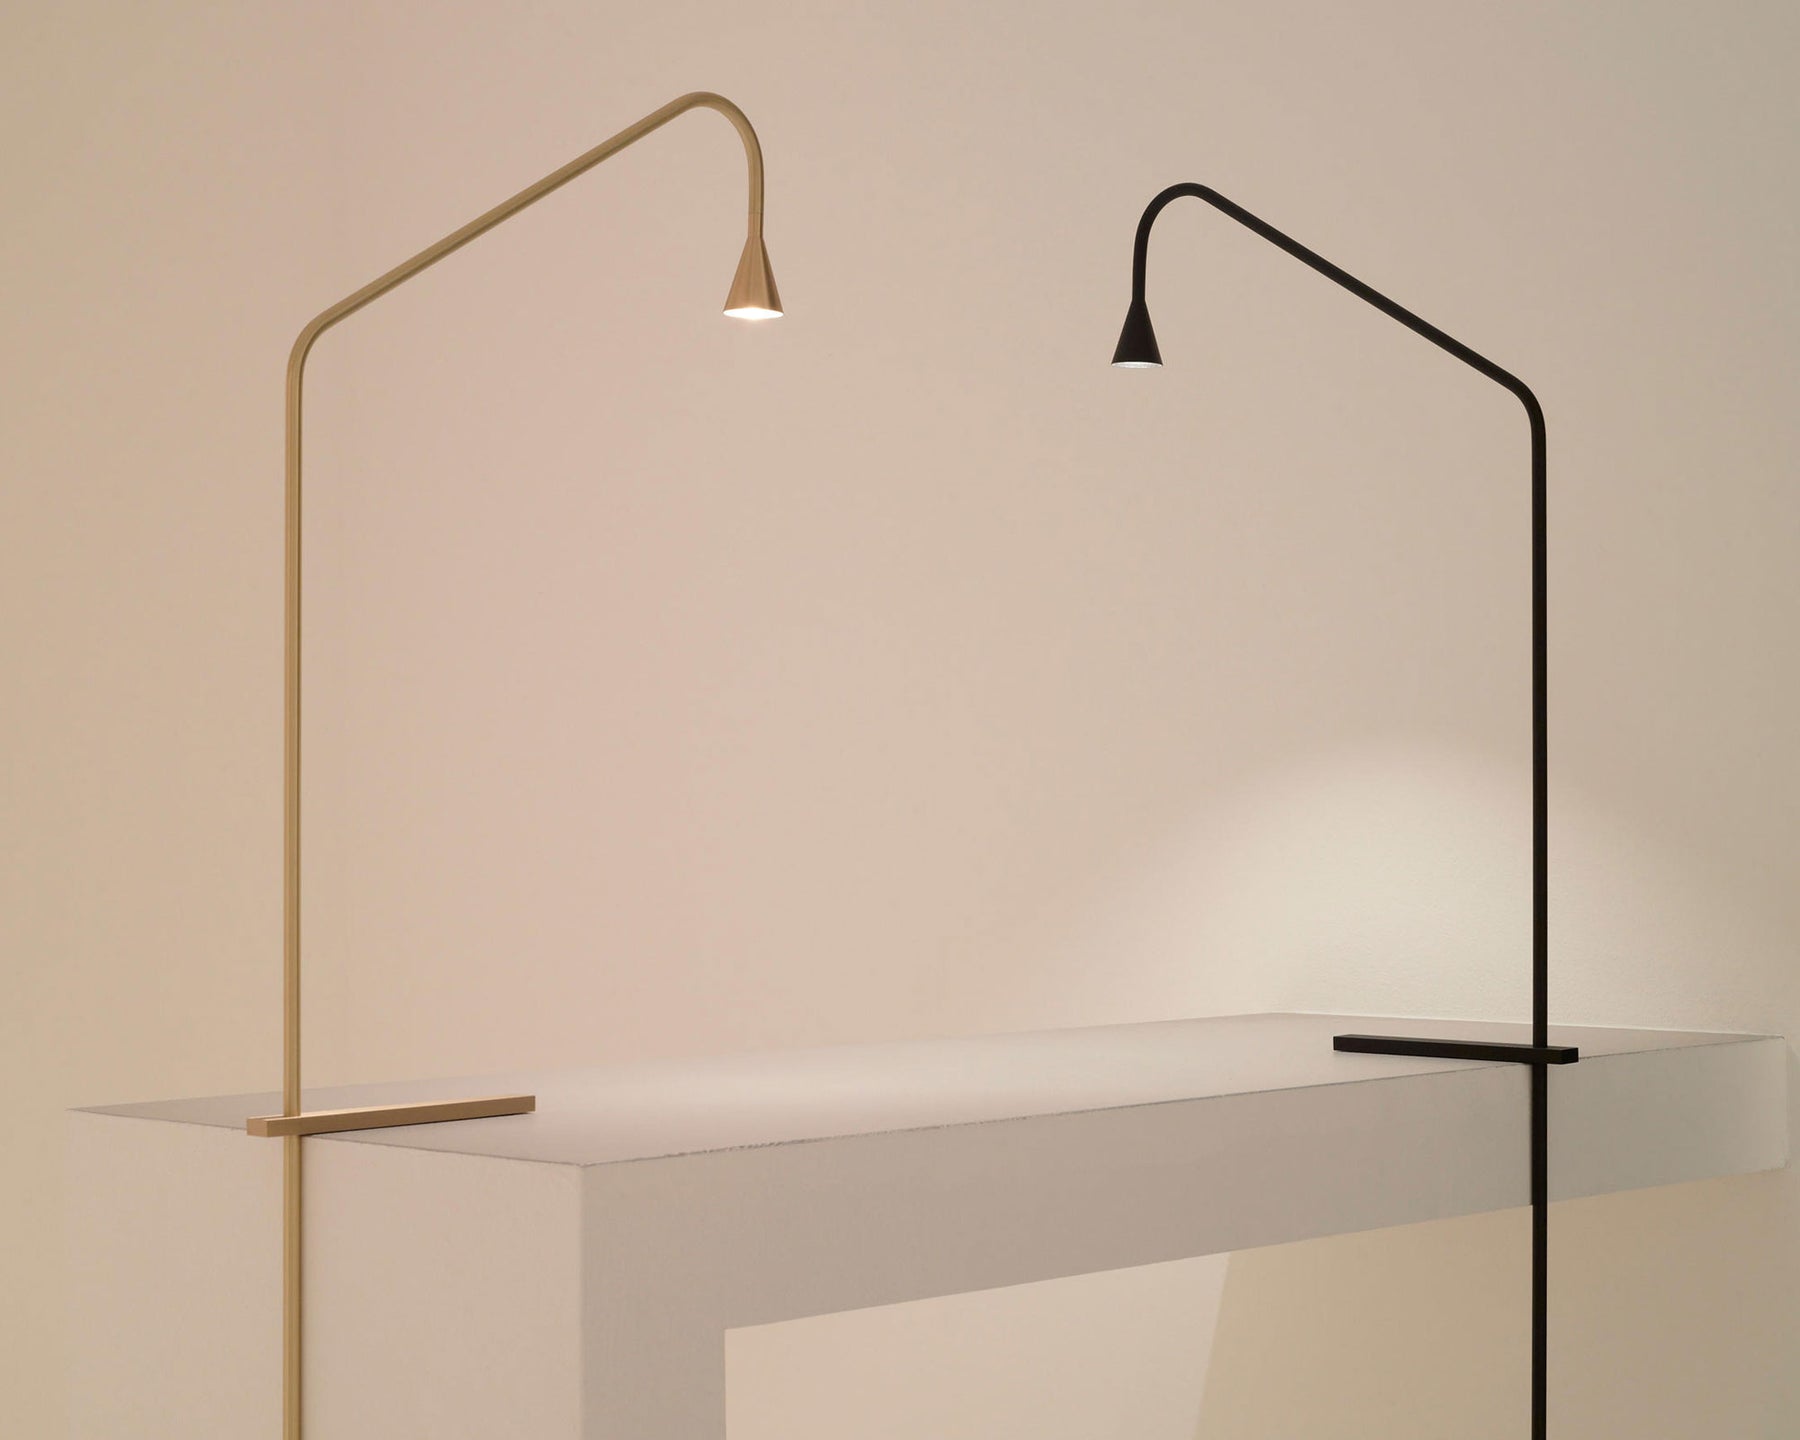 Verstuyft Austere-T Table Lamps | DSHOP